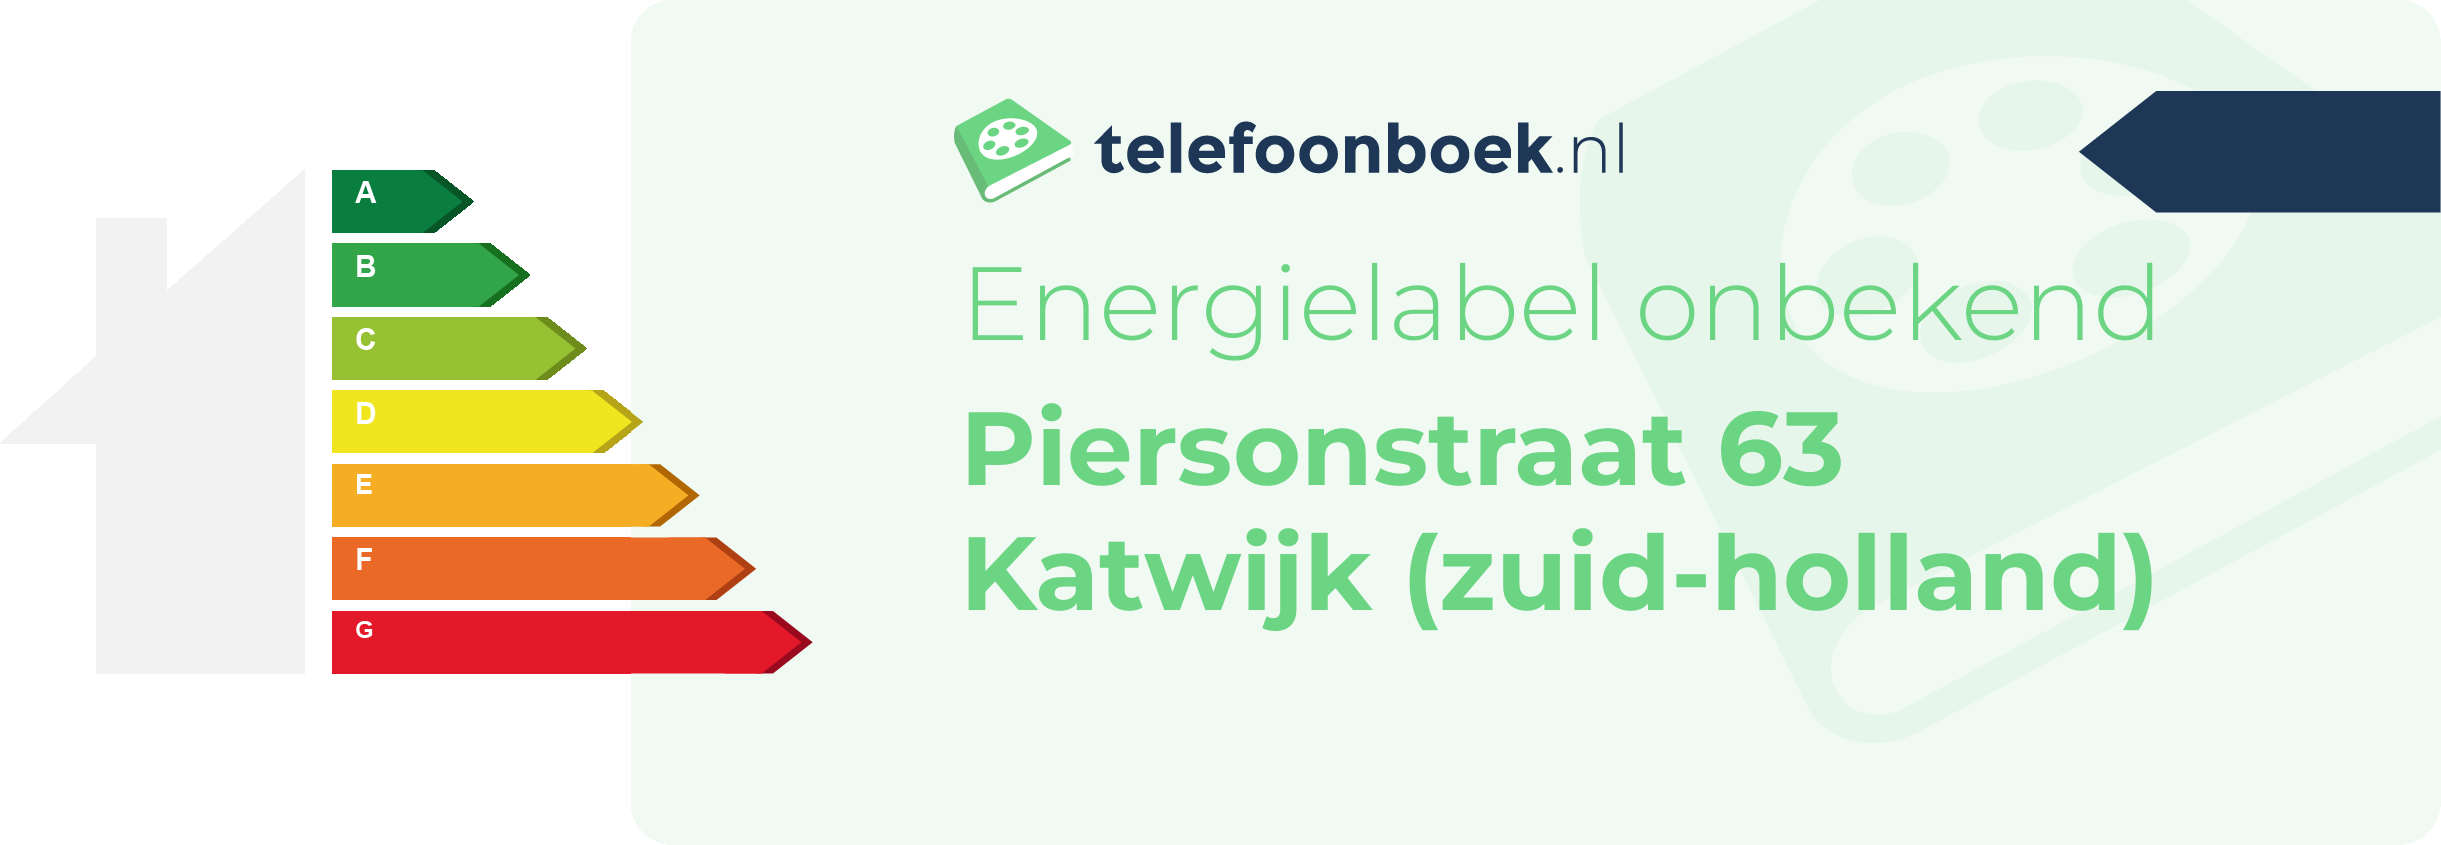 Energielabel Piersonstraat 63 Katwijk (Zuid-Holland)